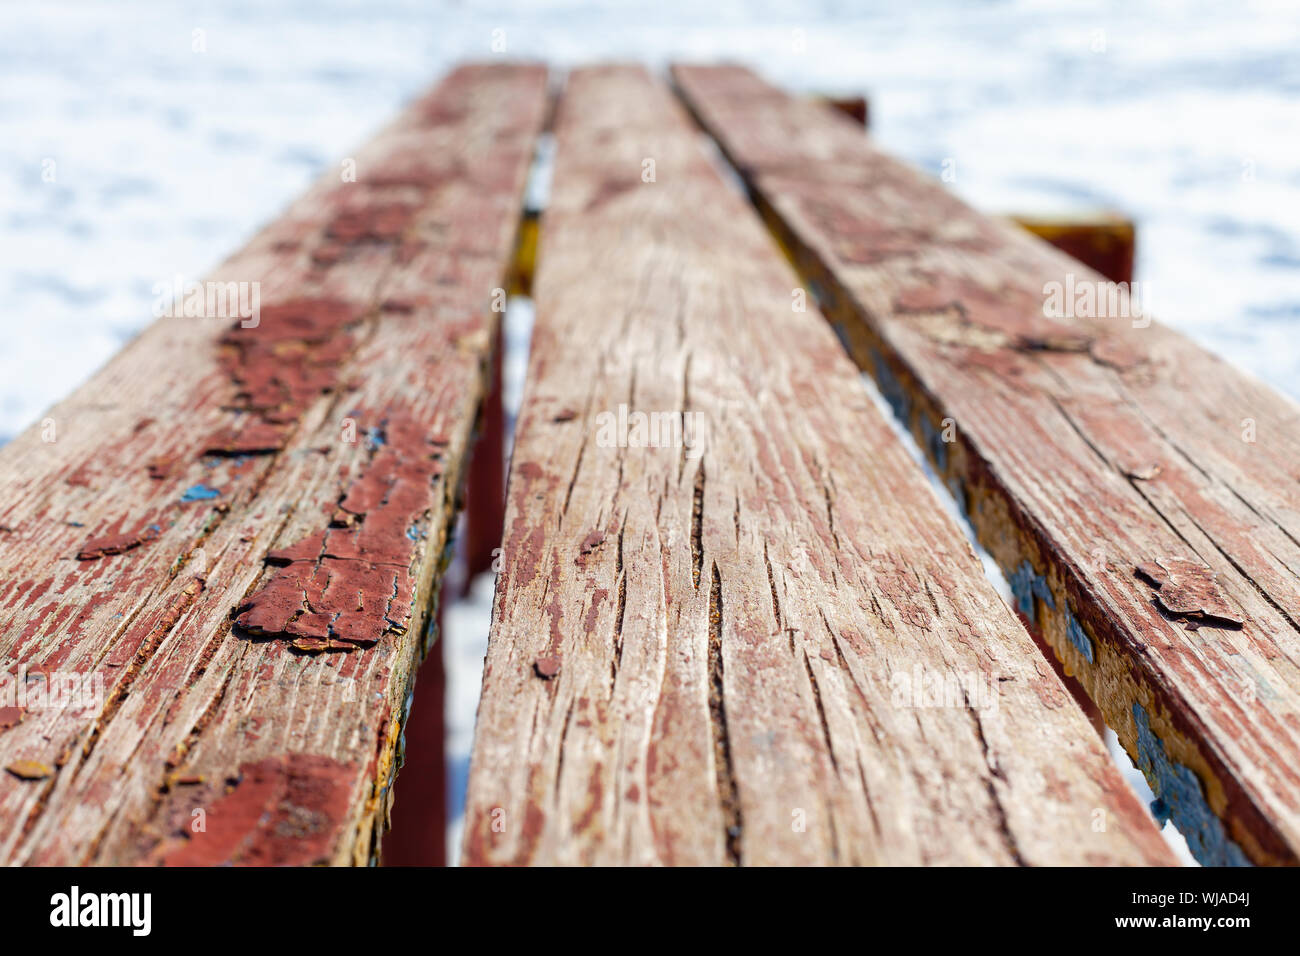 Vieux banc en bois, dans la perspective de l'hiver, fond photo avec selective focus Banque D'Images